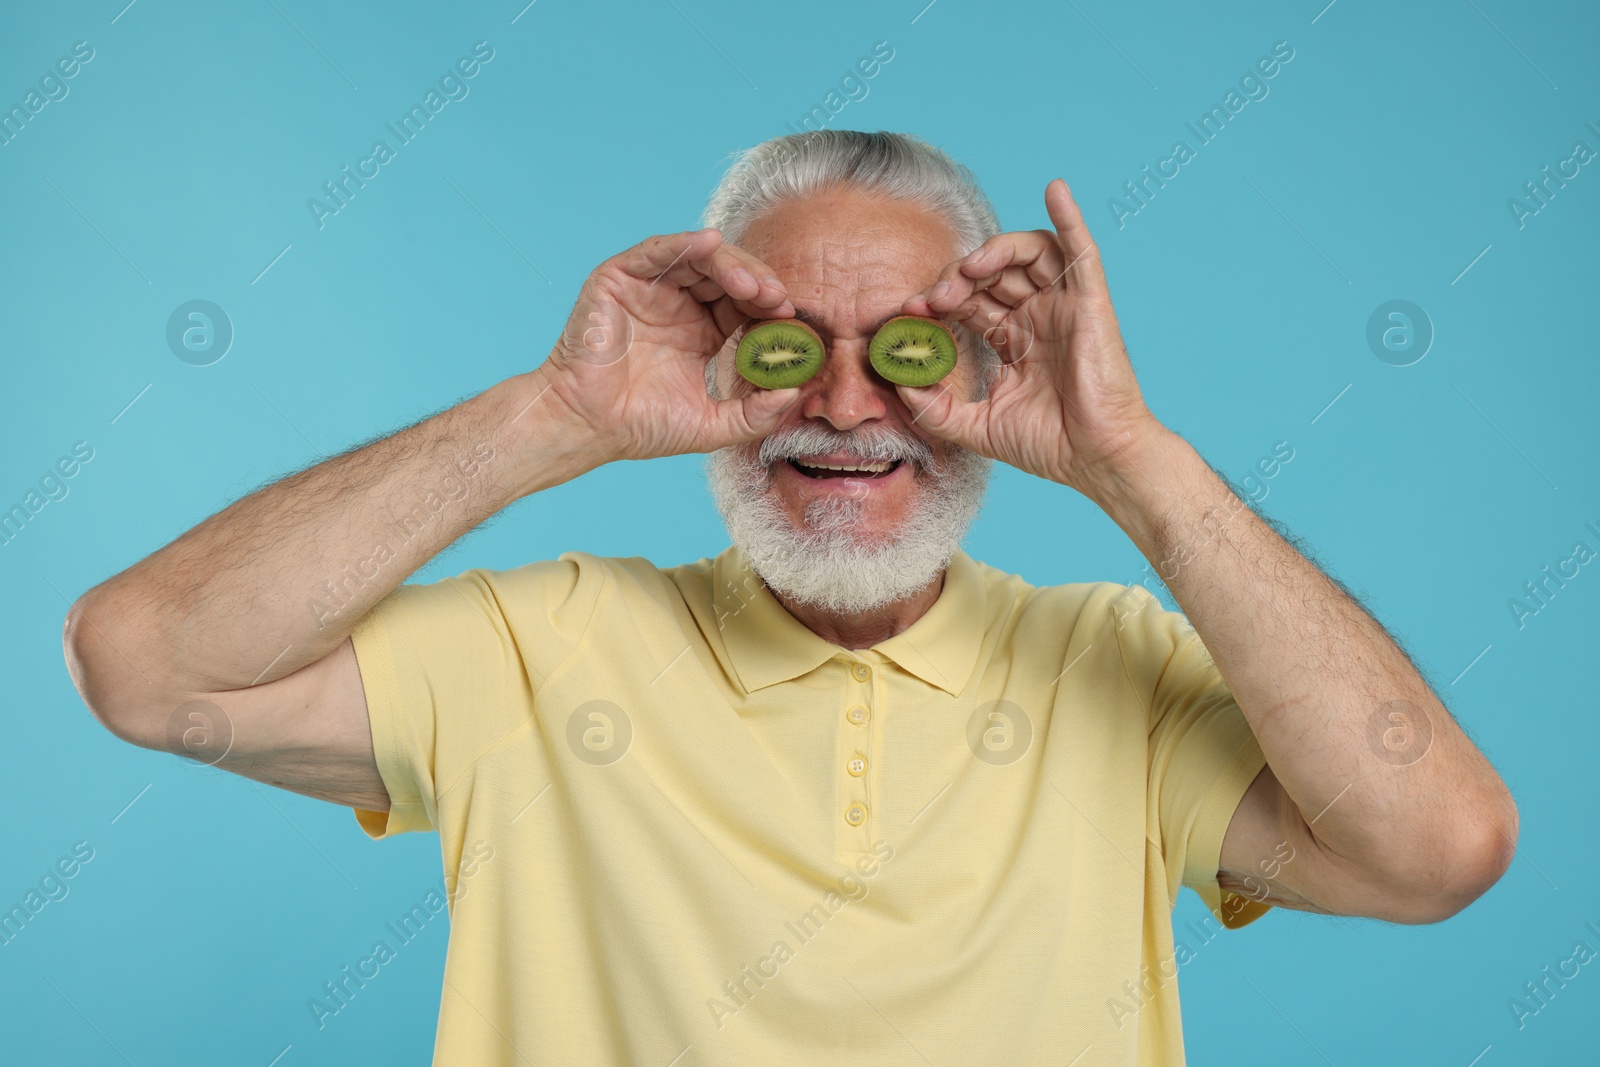 Photo of Senior man covering eyes with halves of kiwi on light blue background